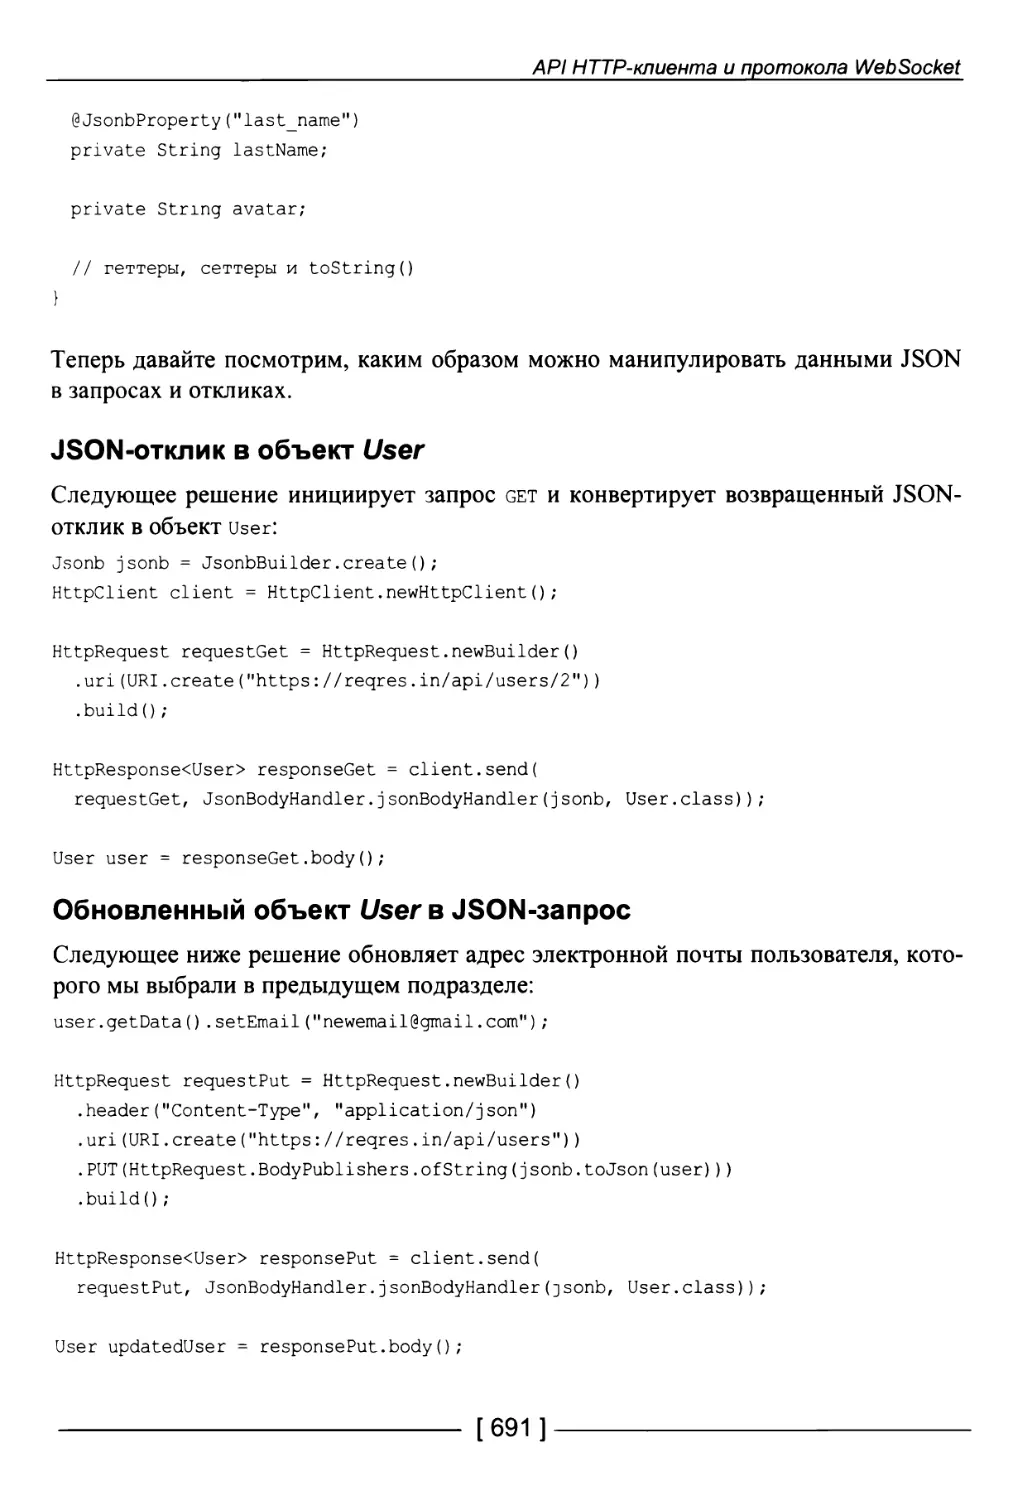 Обновленный объект User в JSON-запрос